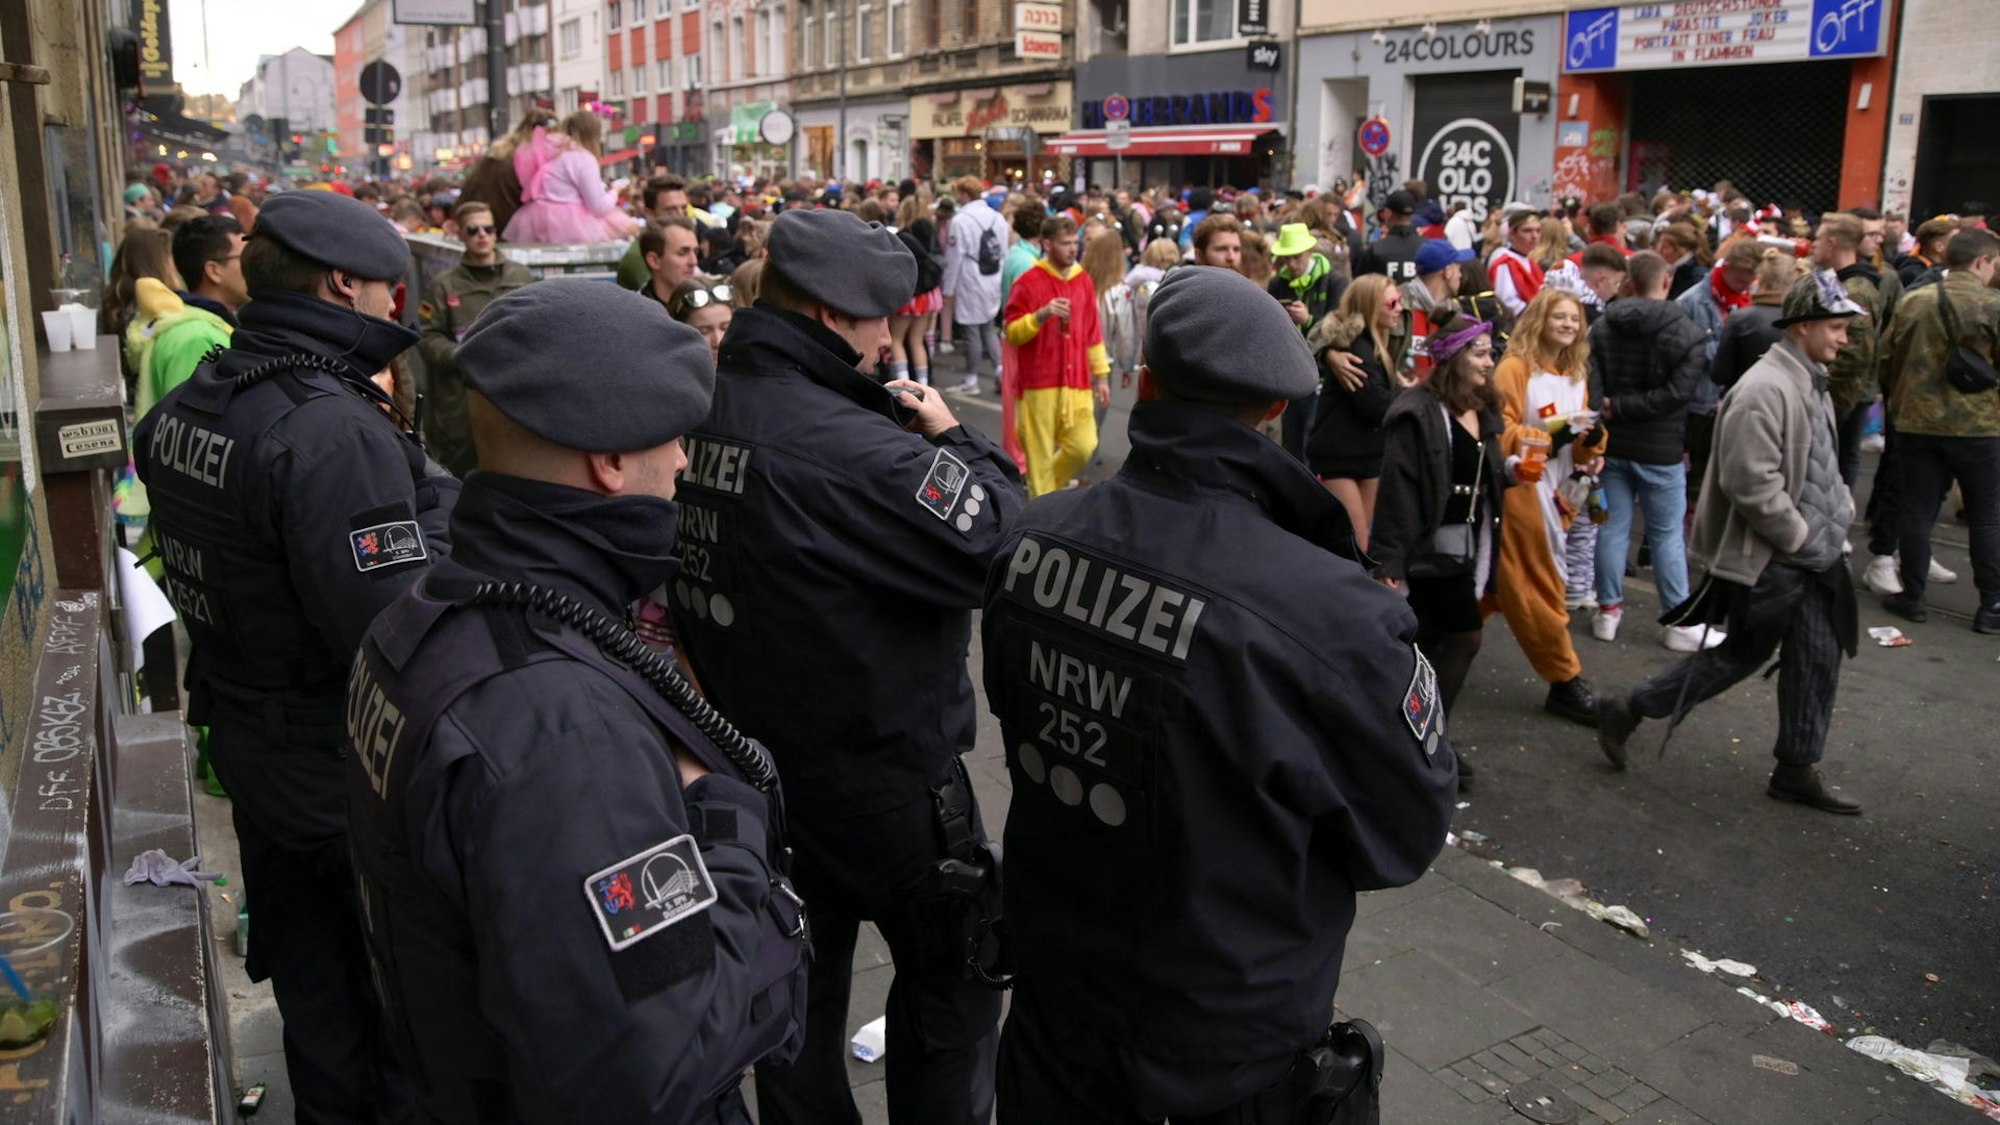 Polizisten einer Hundertschaft stehen am Rand der Zülpicher Straße und beobachten kostümierte Menschen, die vorüberziehen.